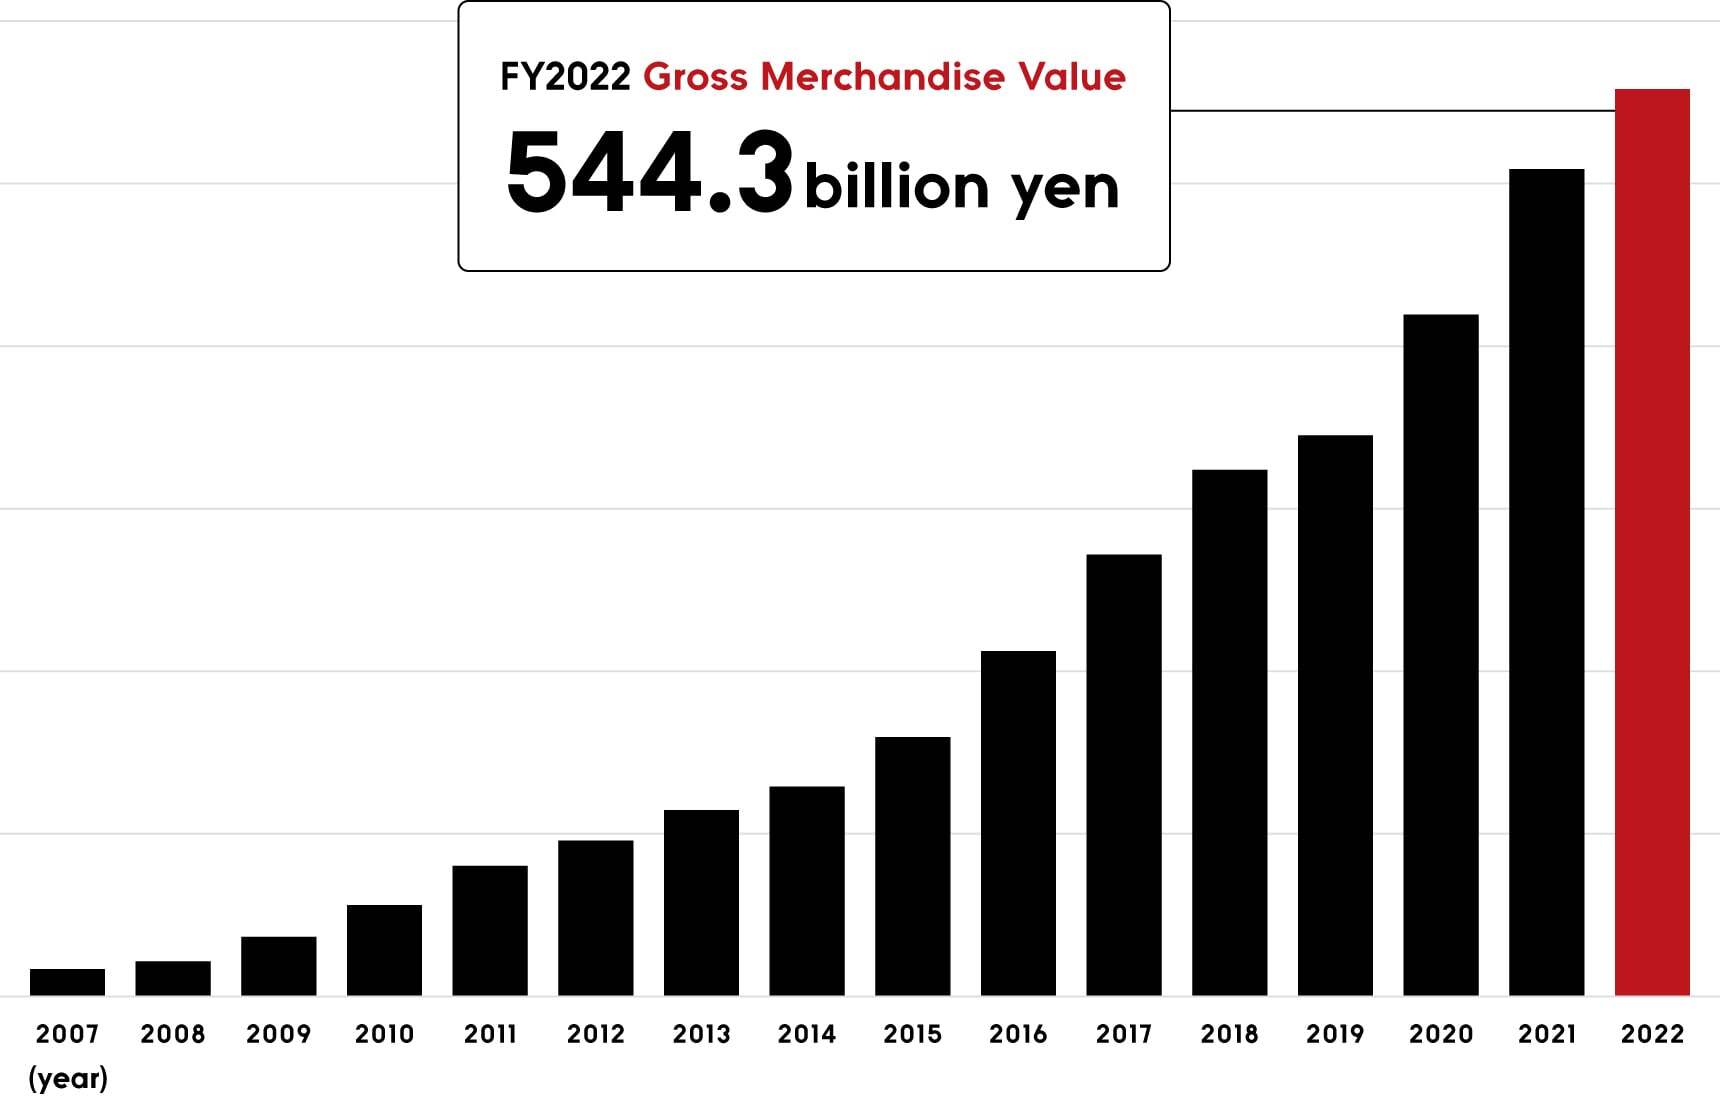 FY2022 Gross Merchandise Value 544.3 billion yen